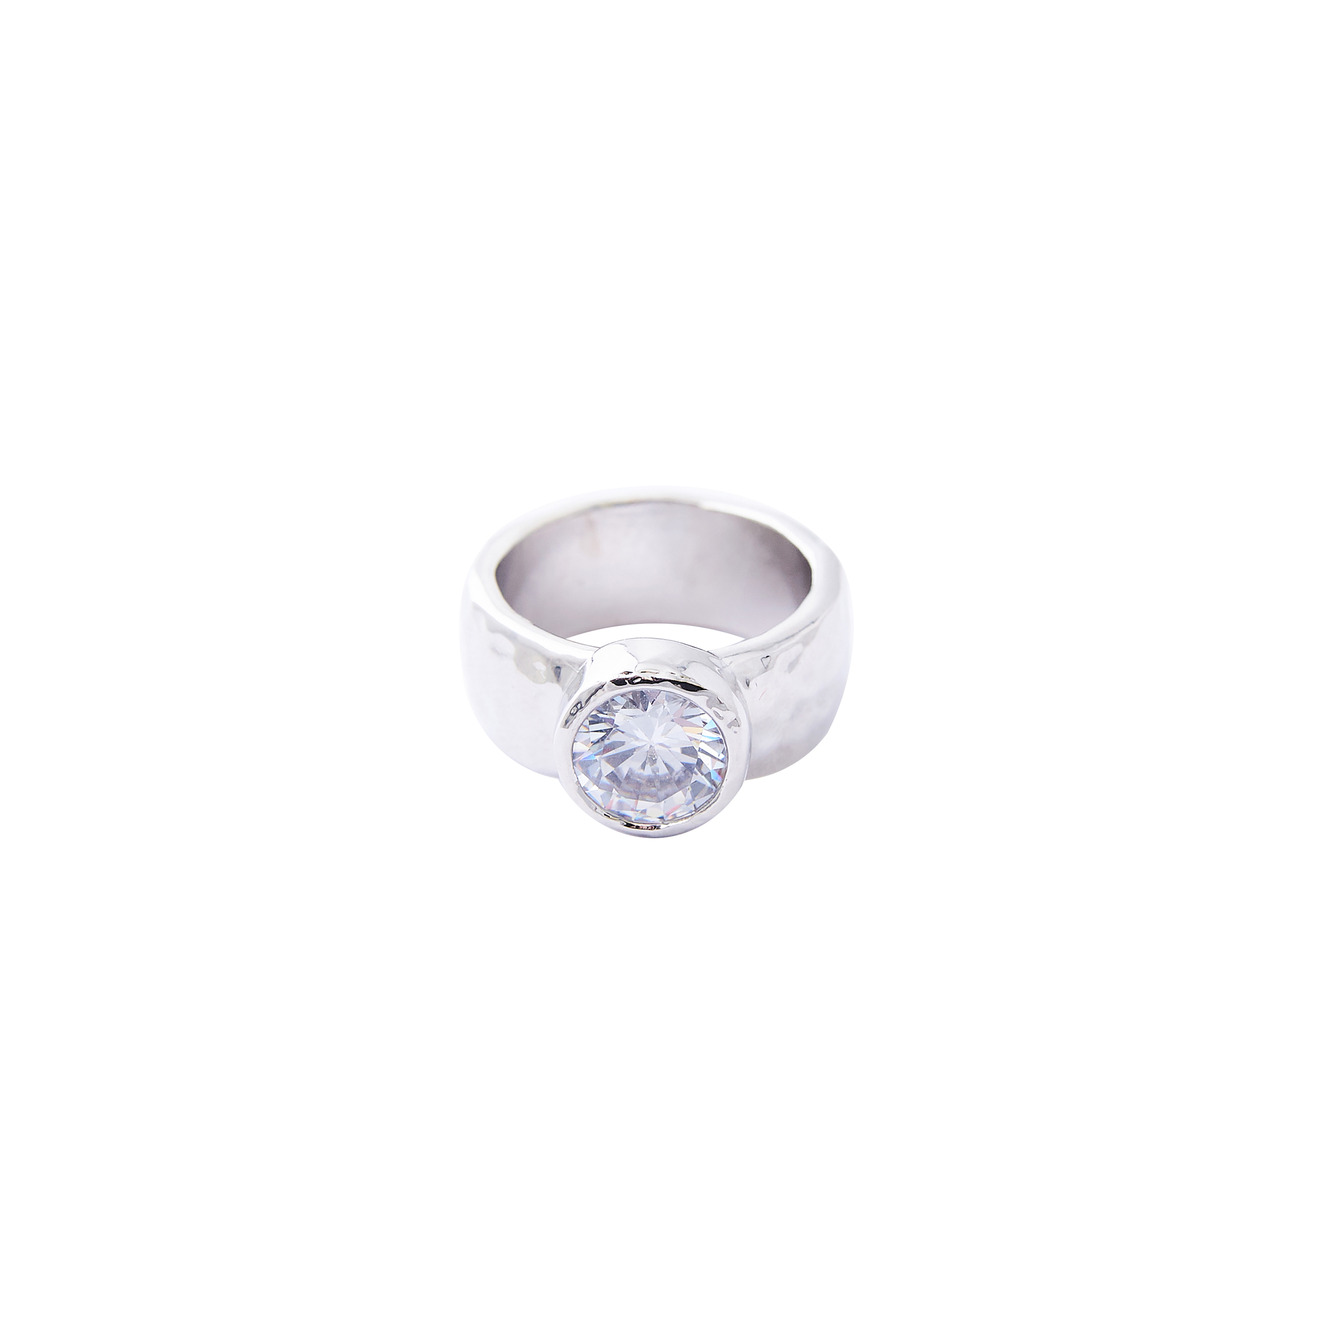 Herald Percy Серебристое высокое кольцо с крупным кристаллом herald percy серебристое кольцо с большим белым кристаллом